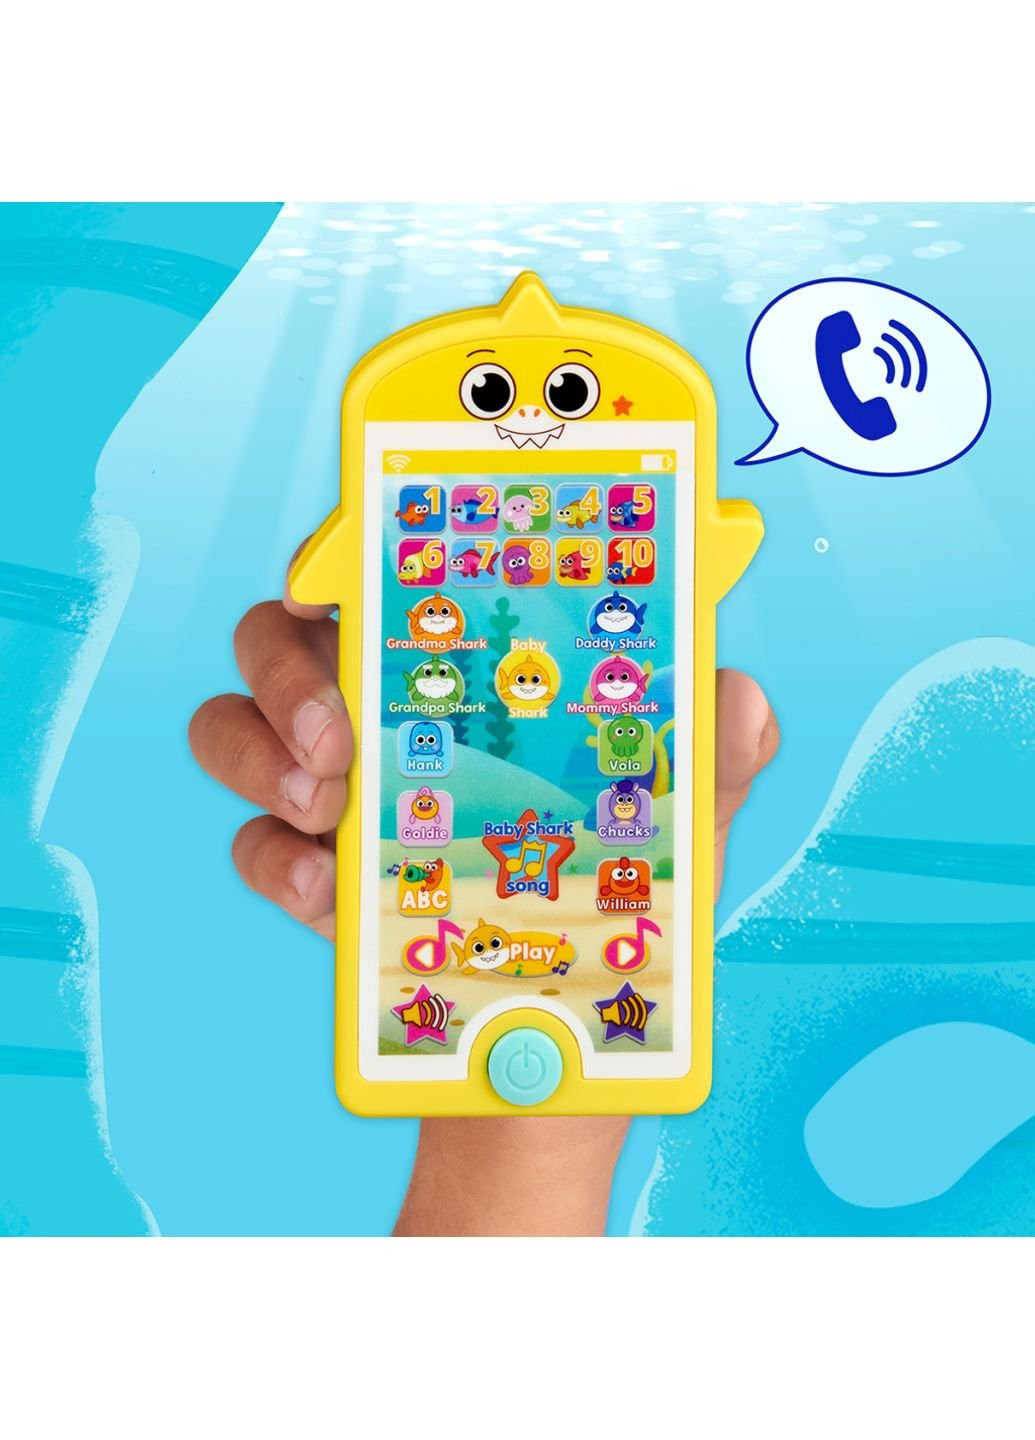 Развивающая игрушка серии Big show - Минипланшет (61445) Baby Shark (254067286)